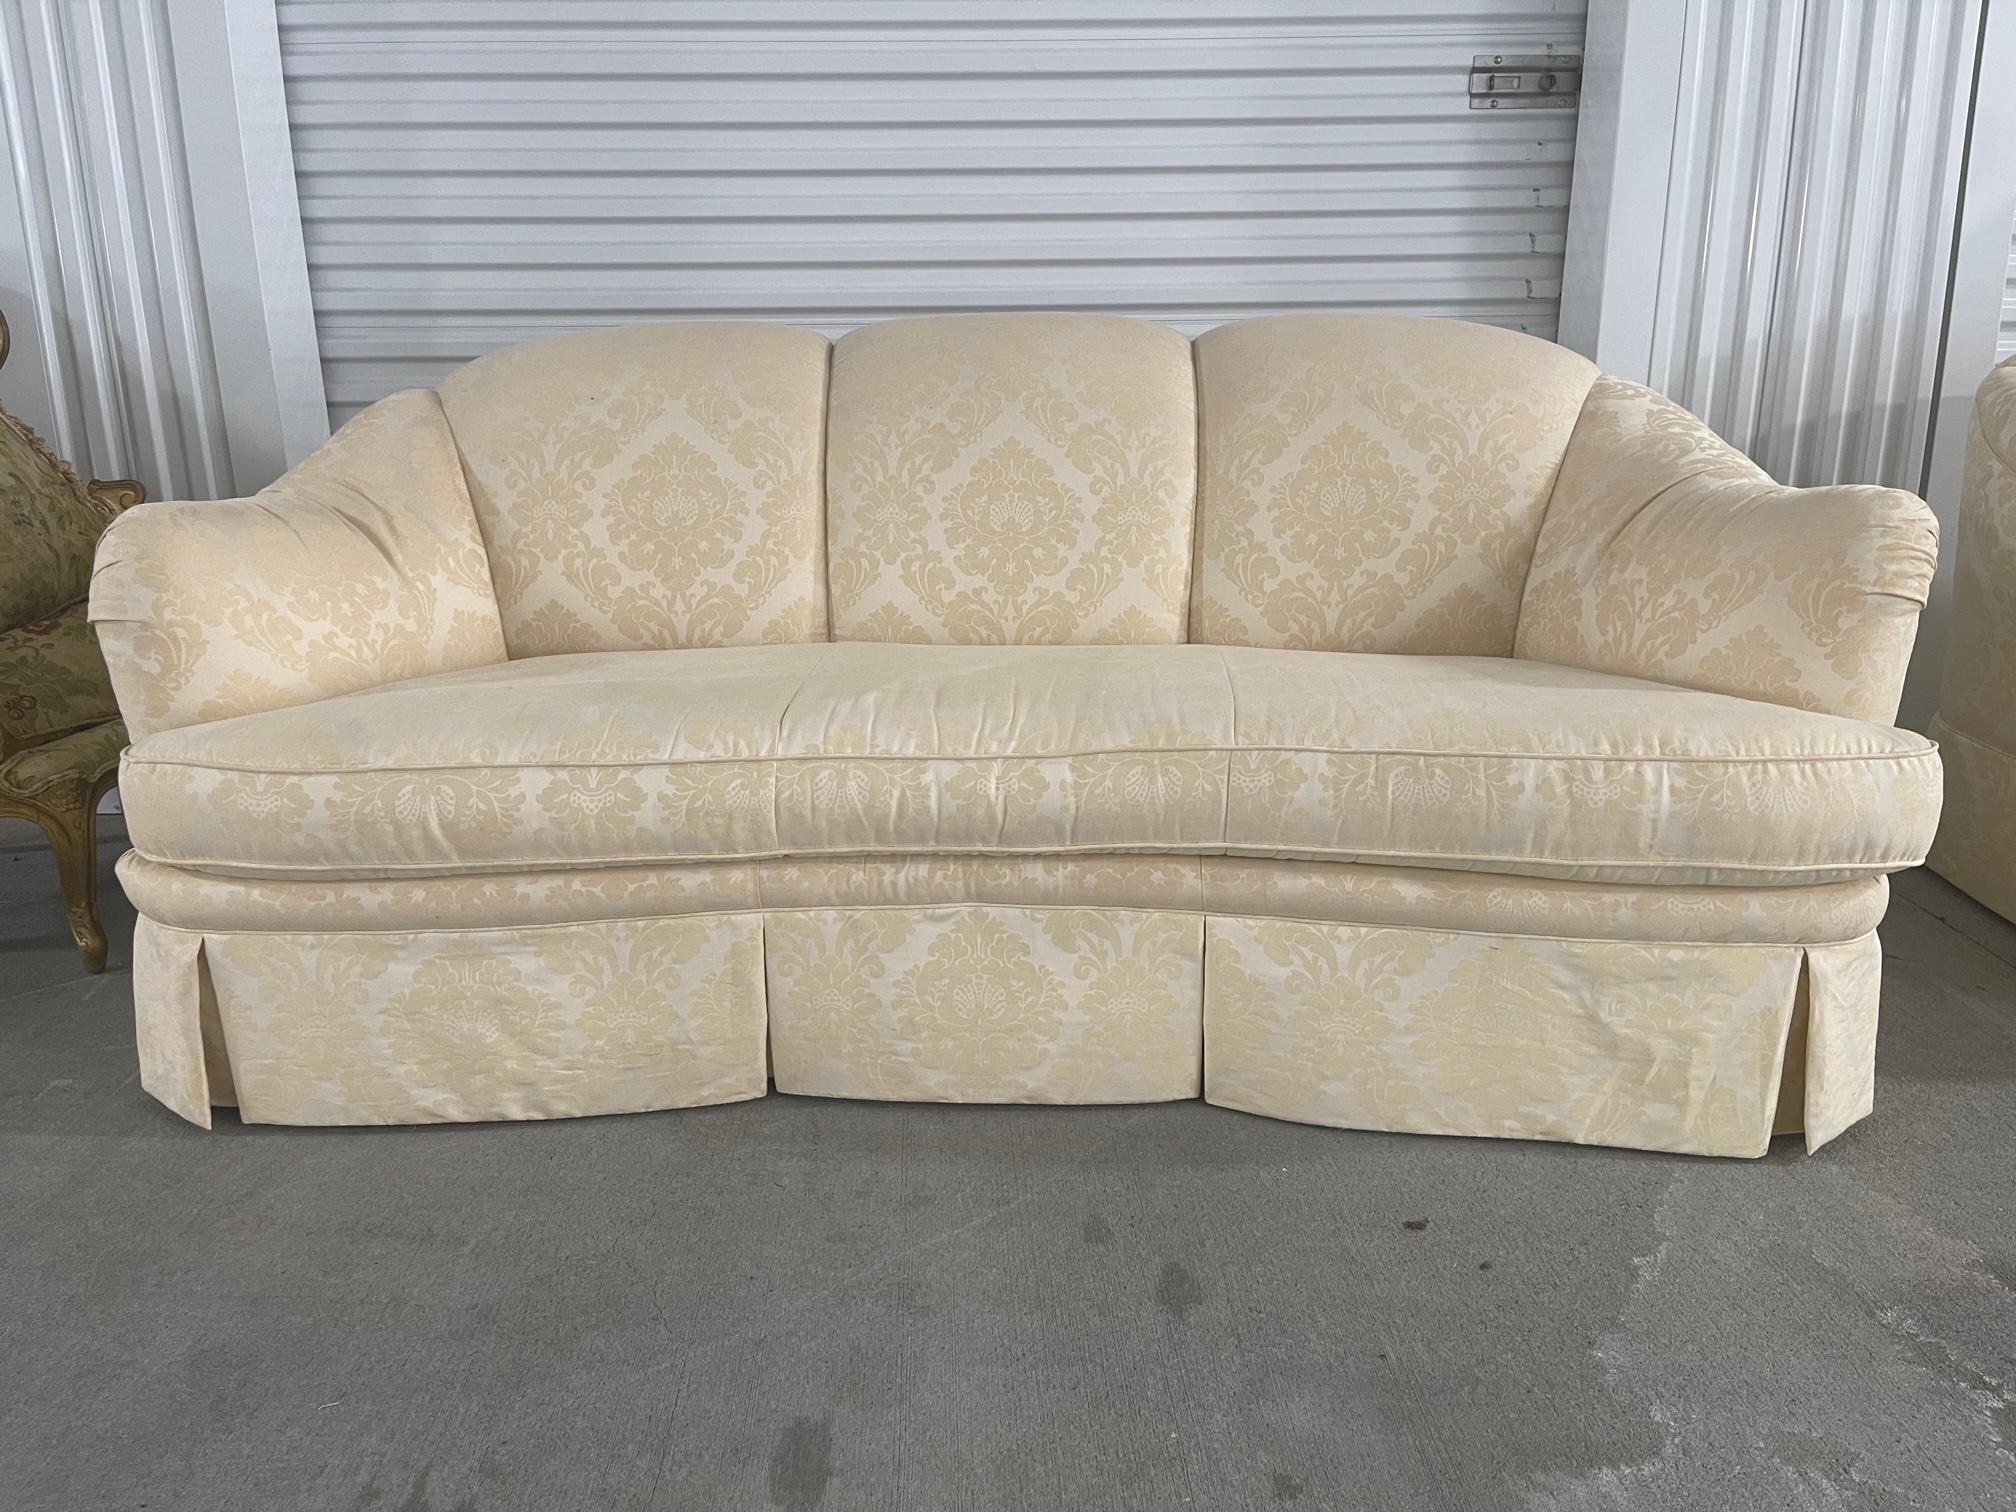 Englisches Sofa des 20. Jahrhunderts mit geschwungenen Armlehnen und schlangenförmiger Front, gepolstert mit weißem Damast.